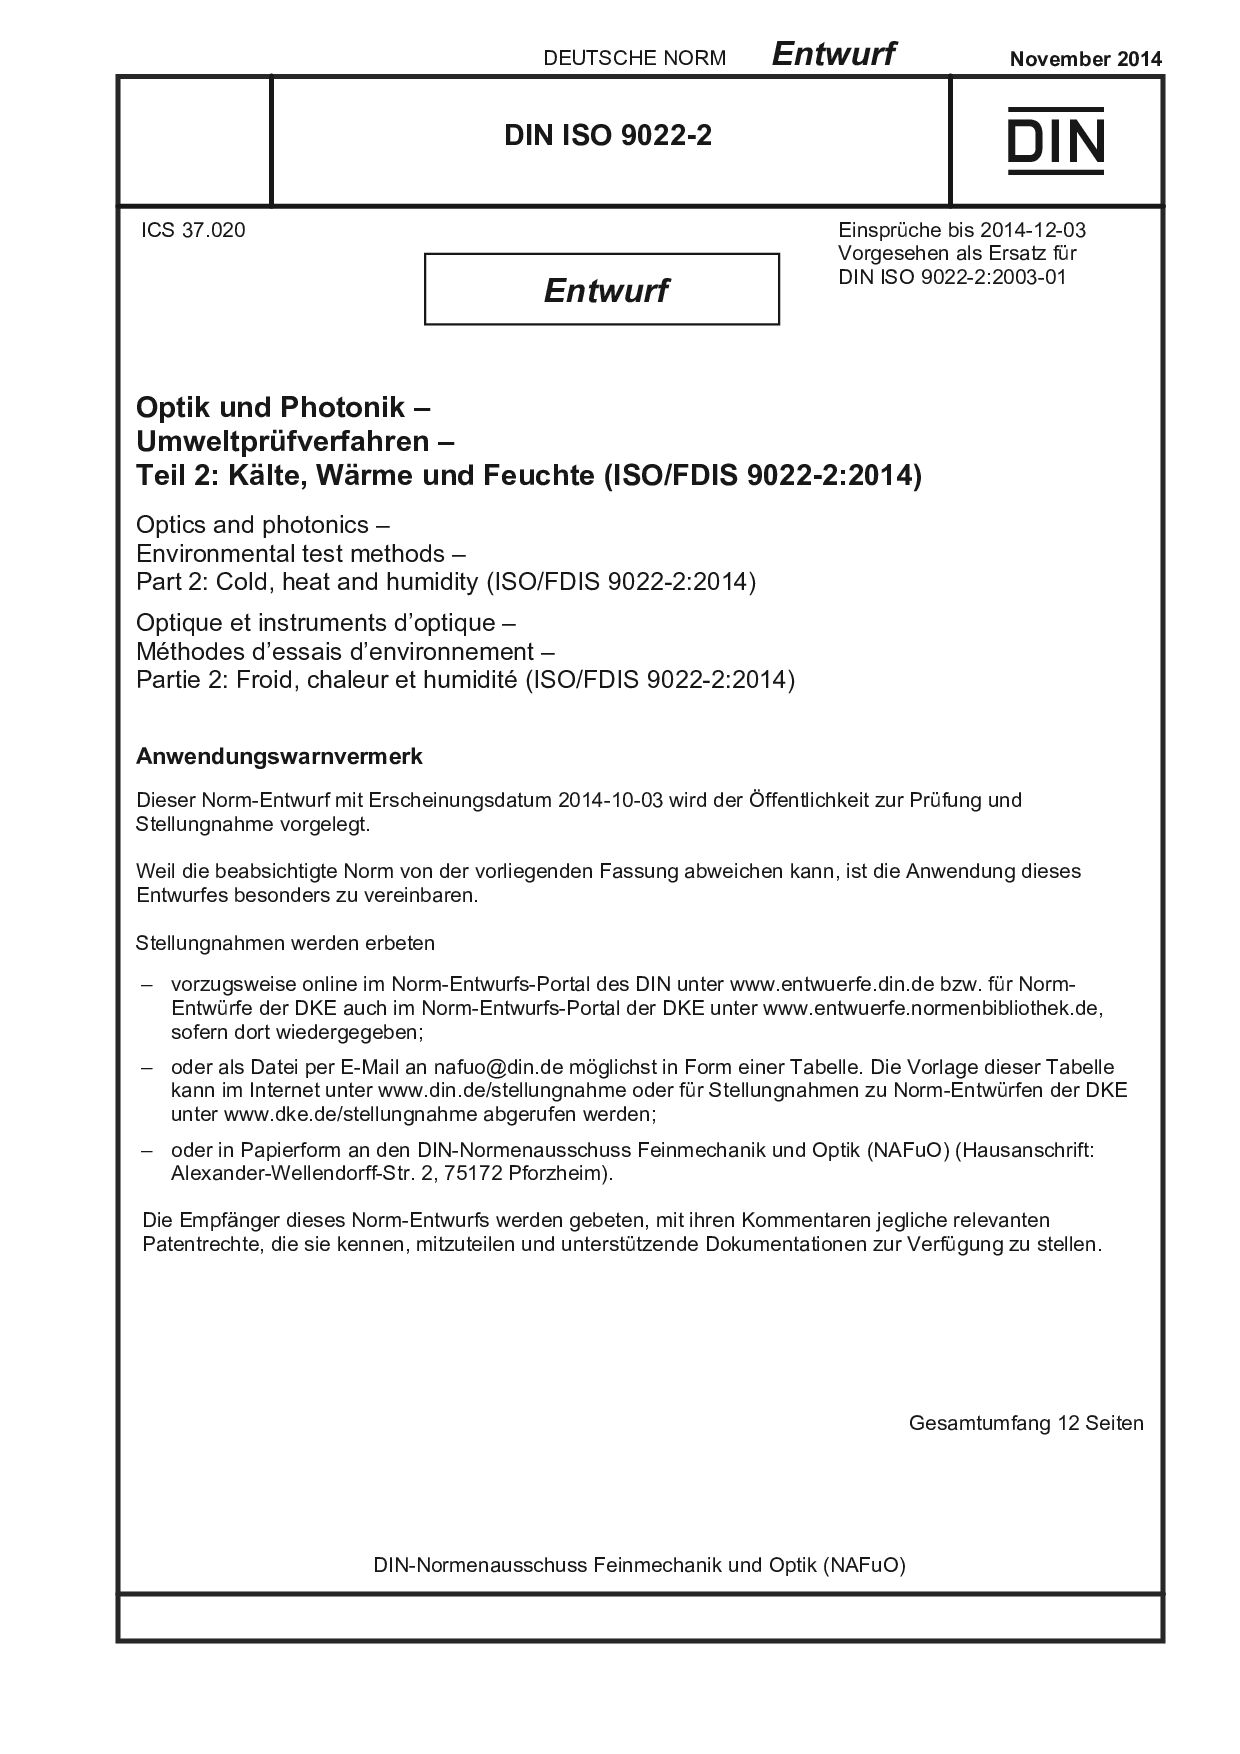 DIN ISO 9022-2 E:2014-11